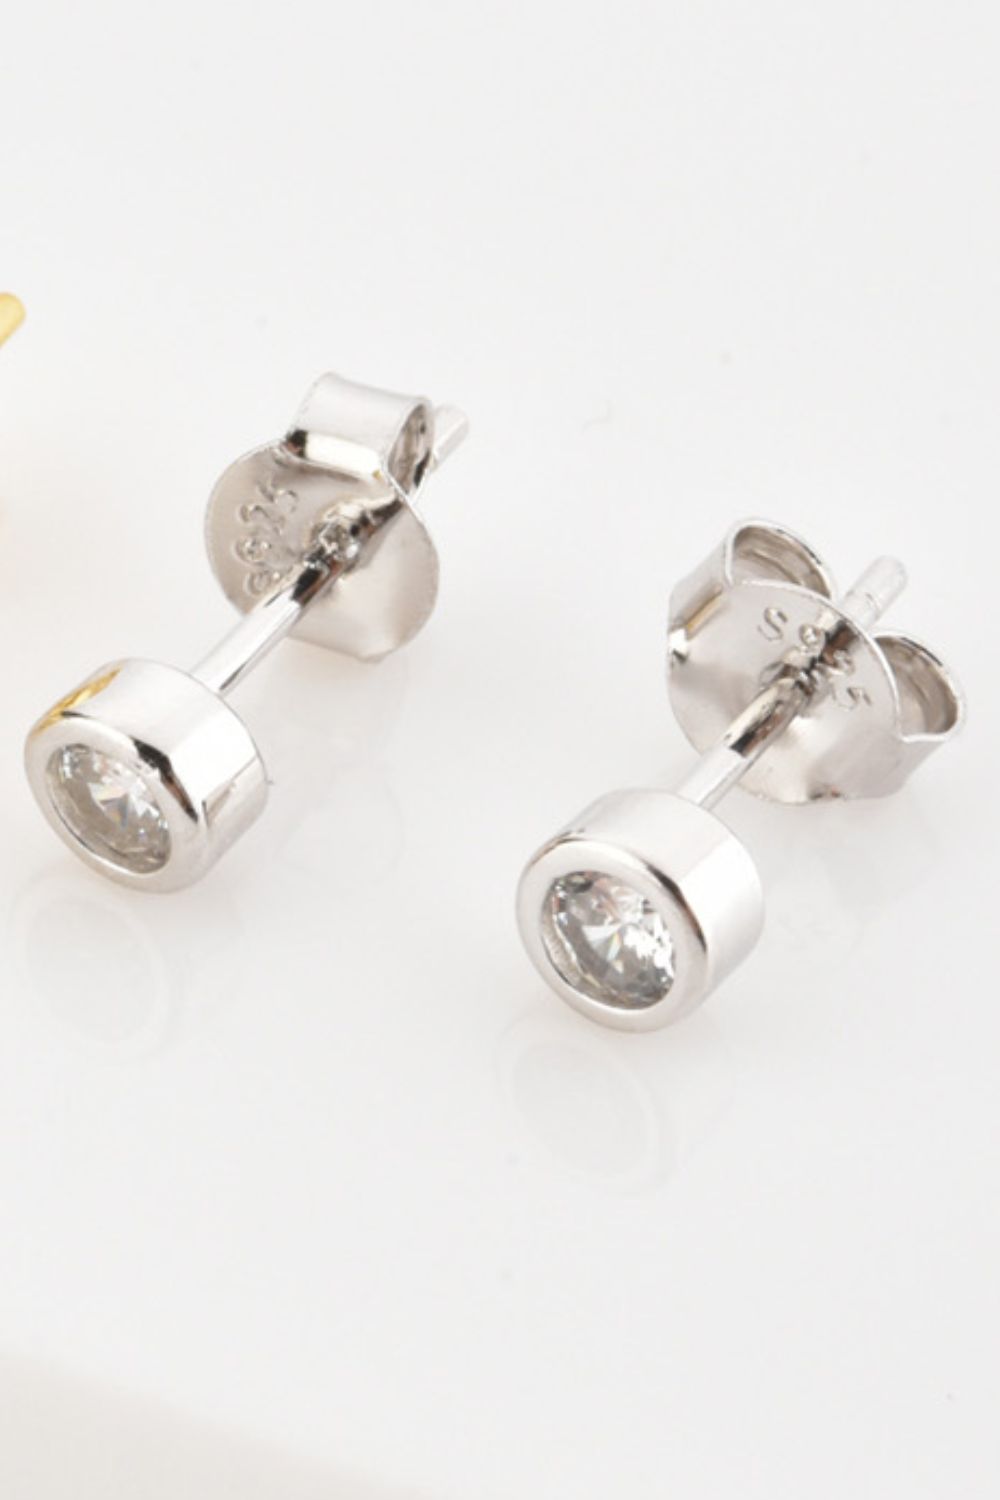 Minimalist Zircon 925 Sterling Silver Earrings - Earrings - FITGGINS